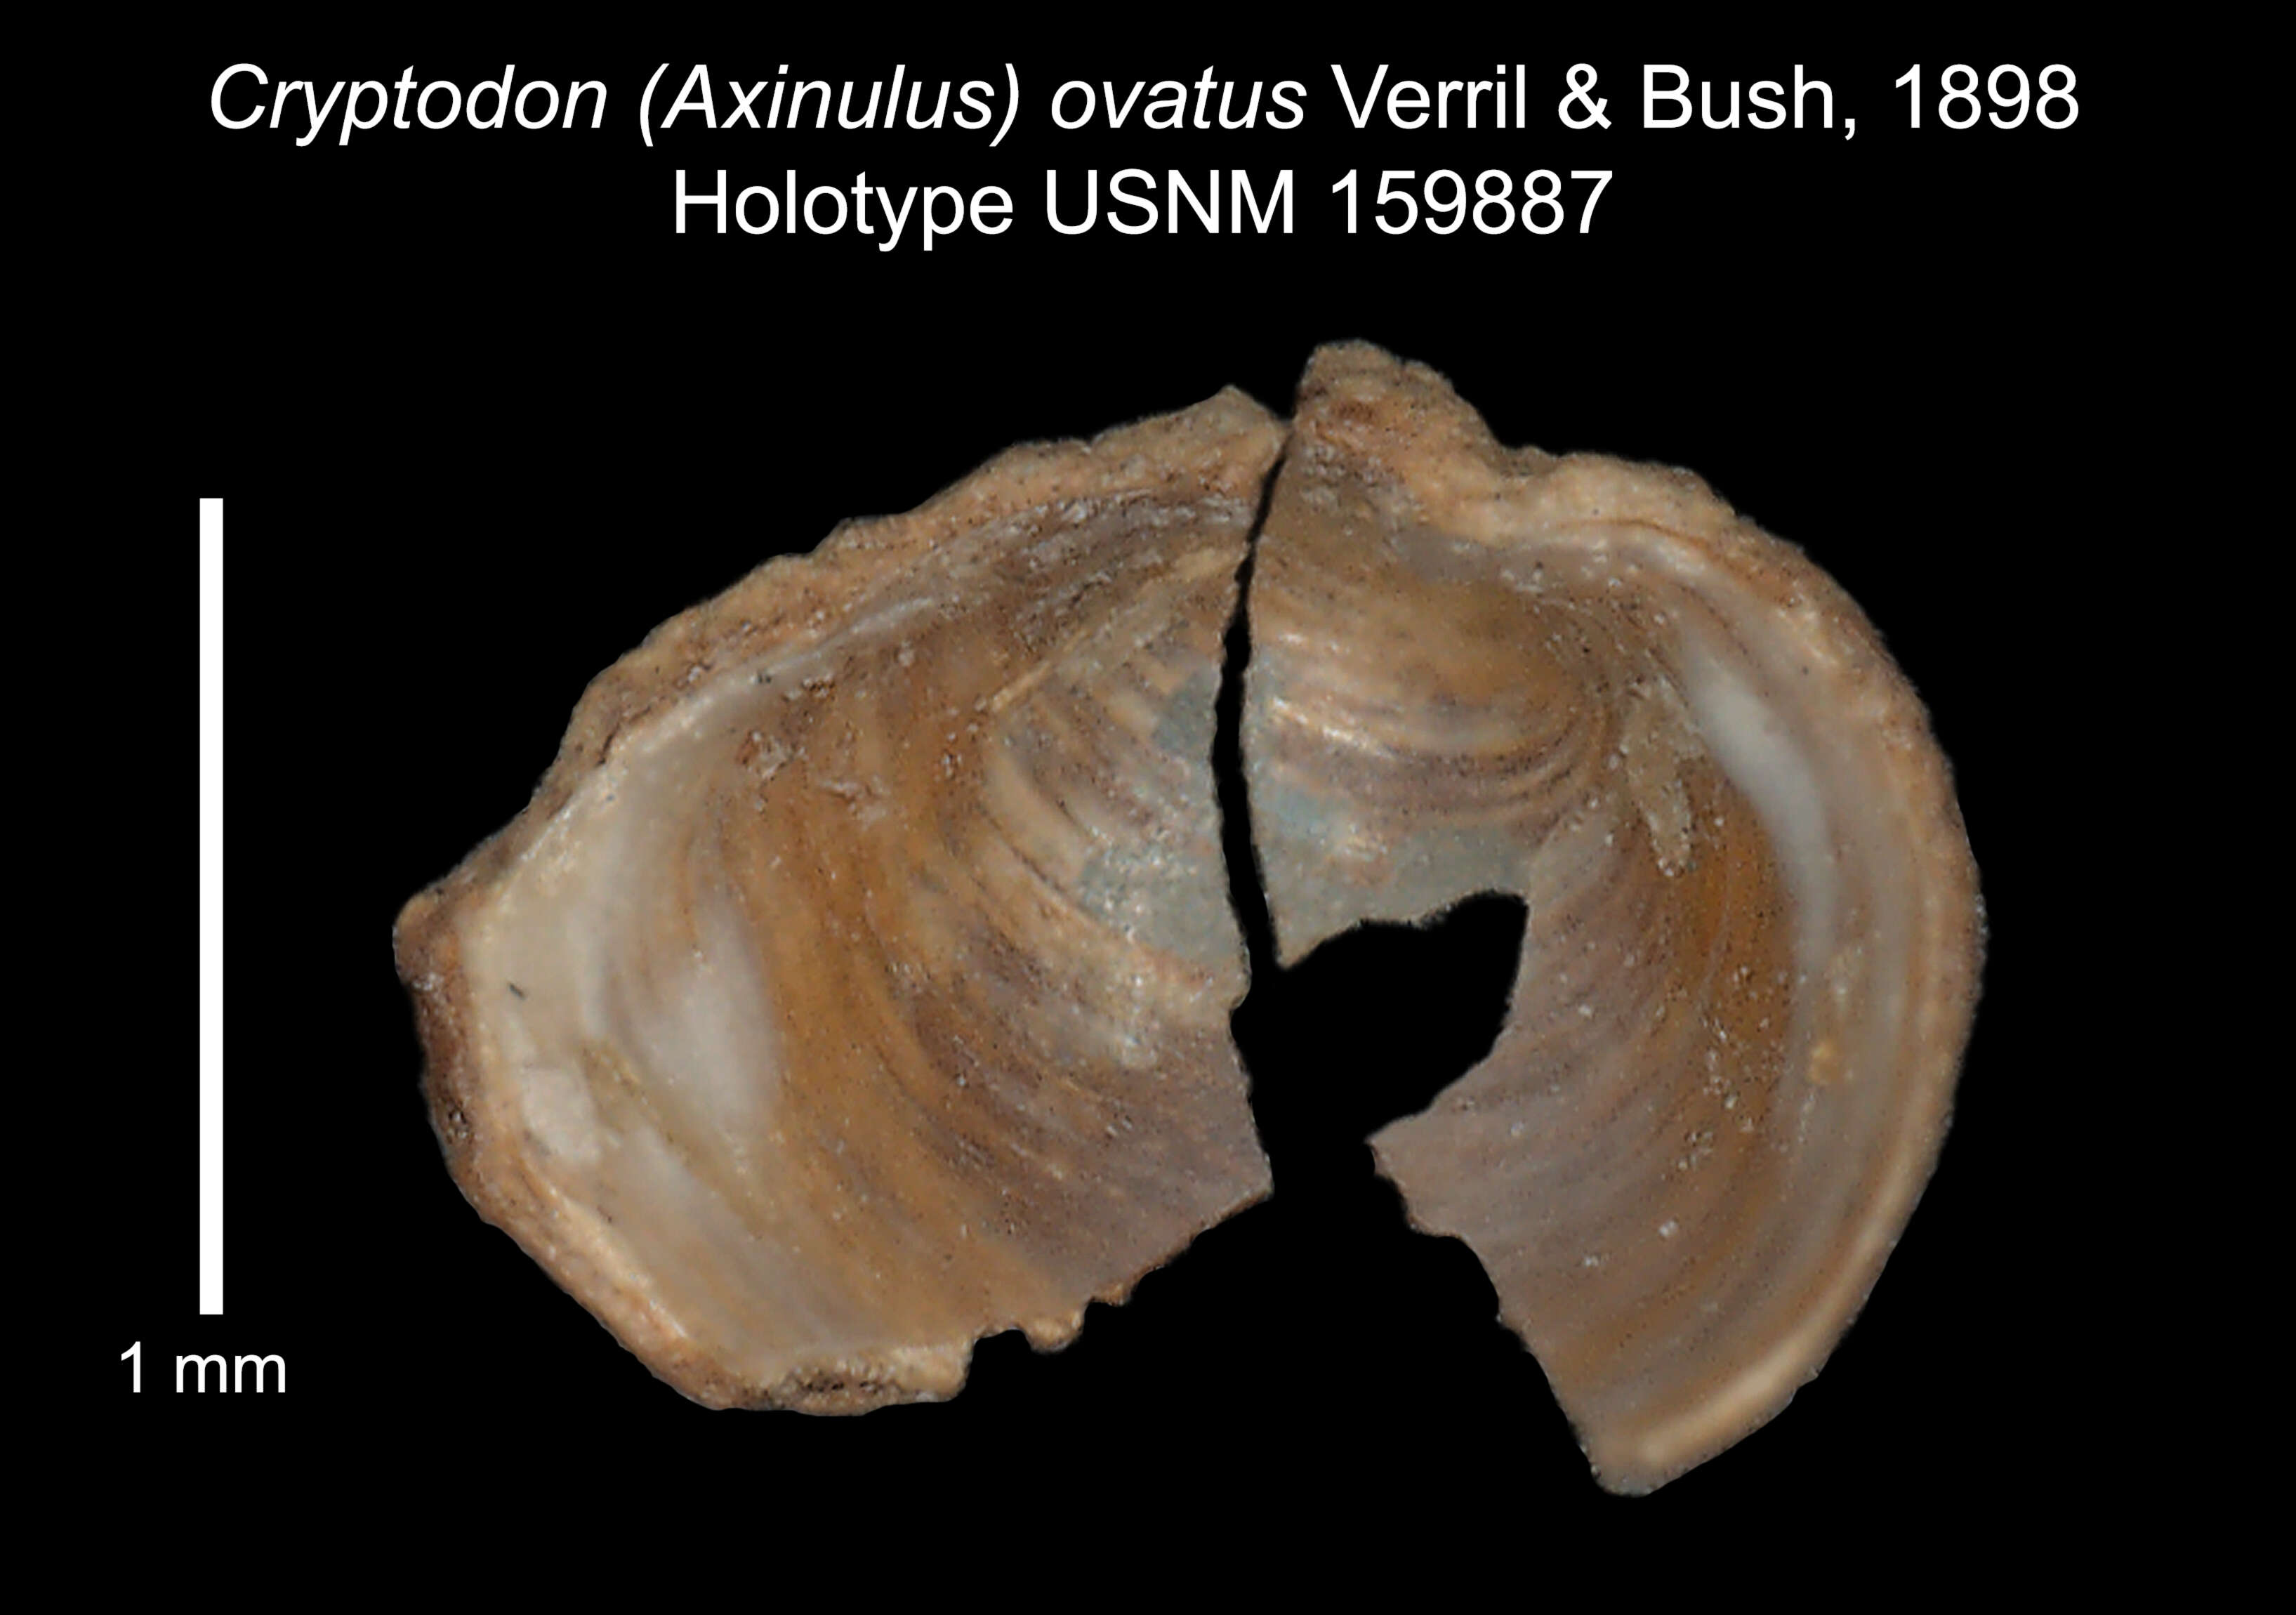 Image of Mendicula ovata (Verrill & Bush 1898)